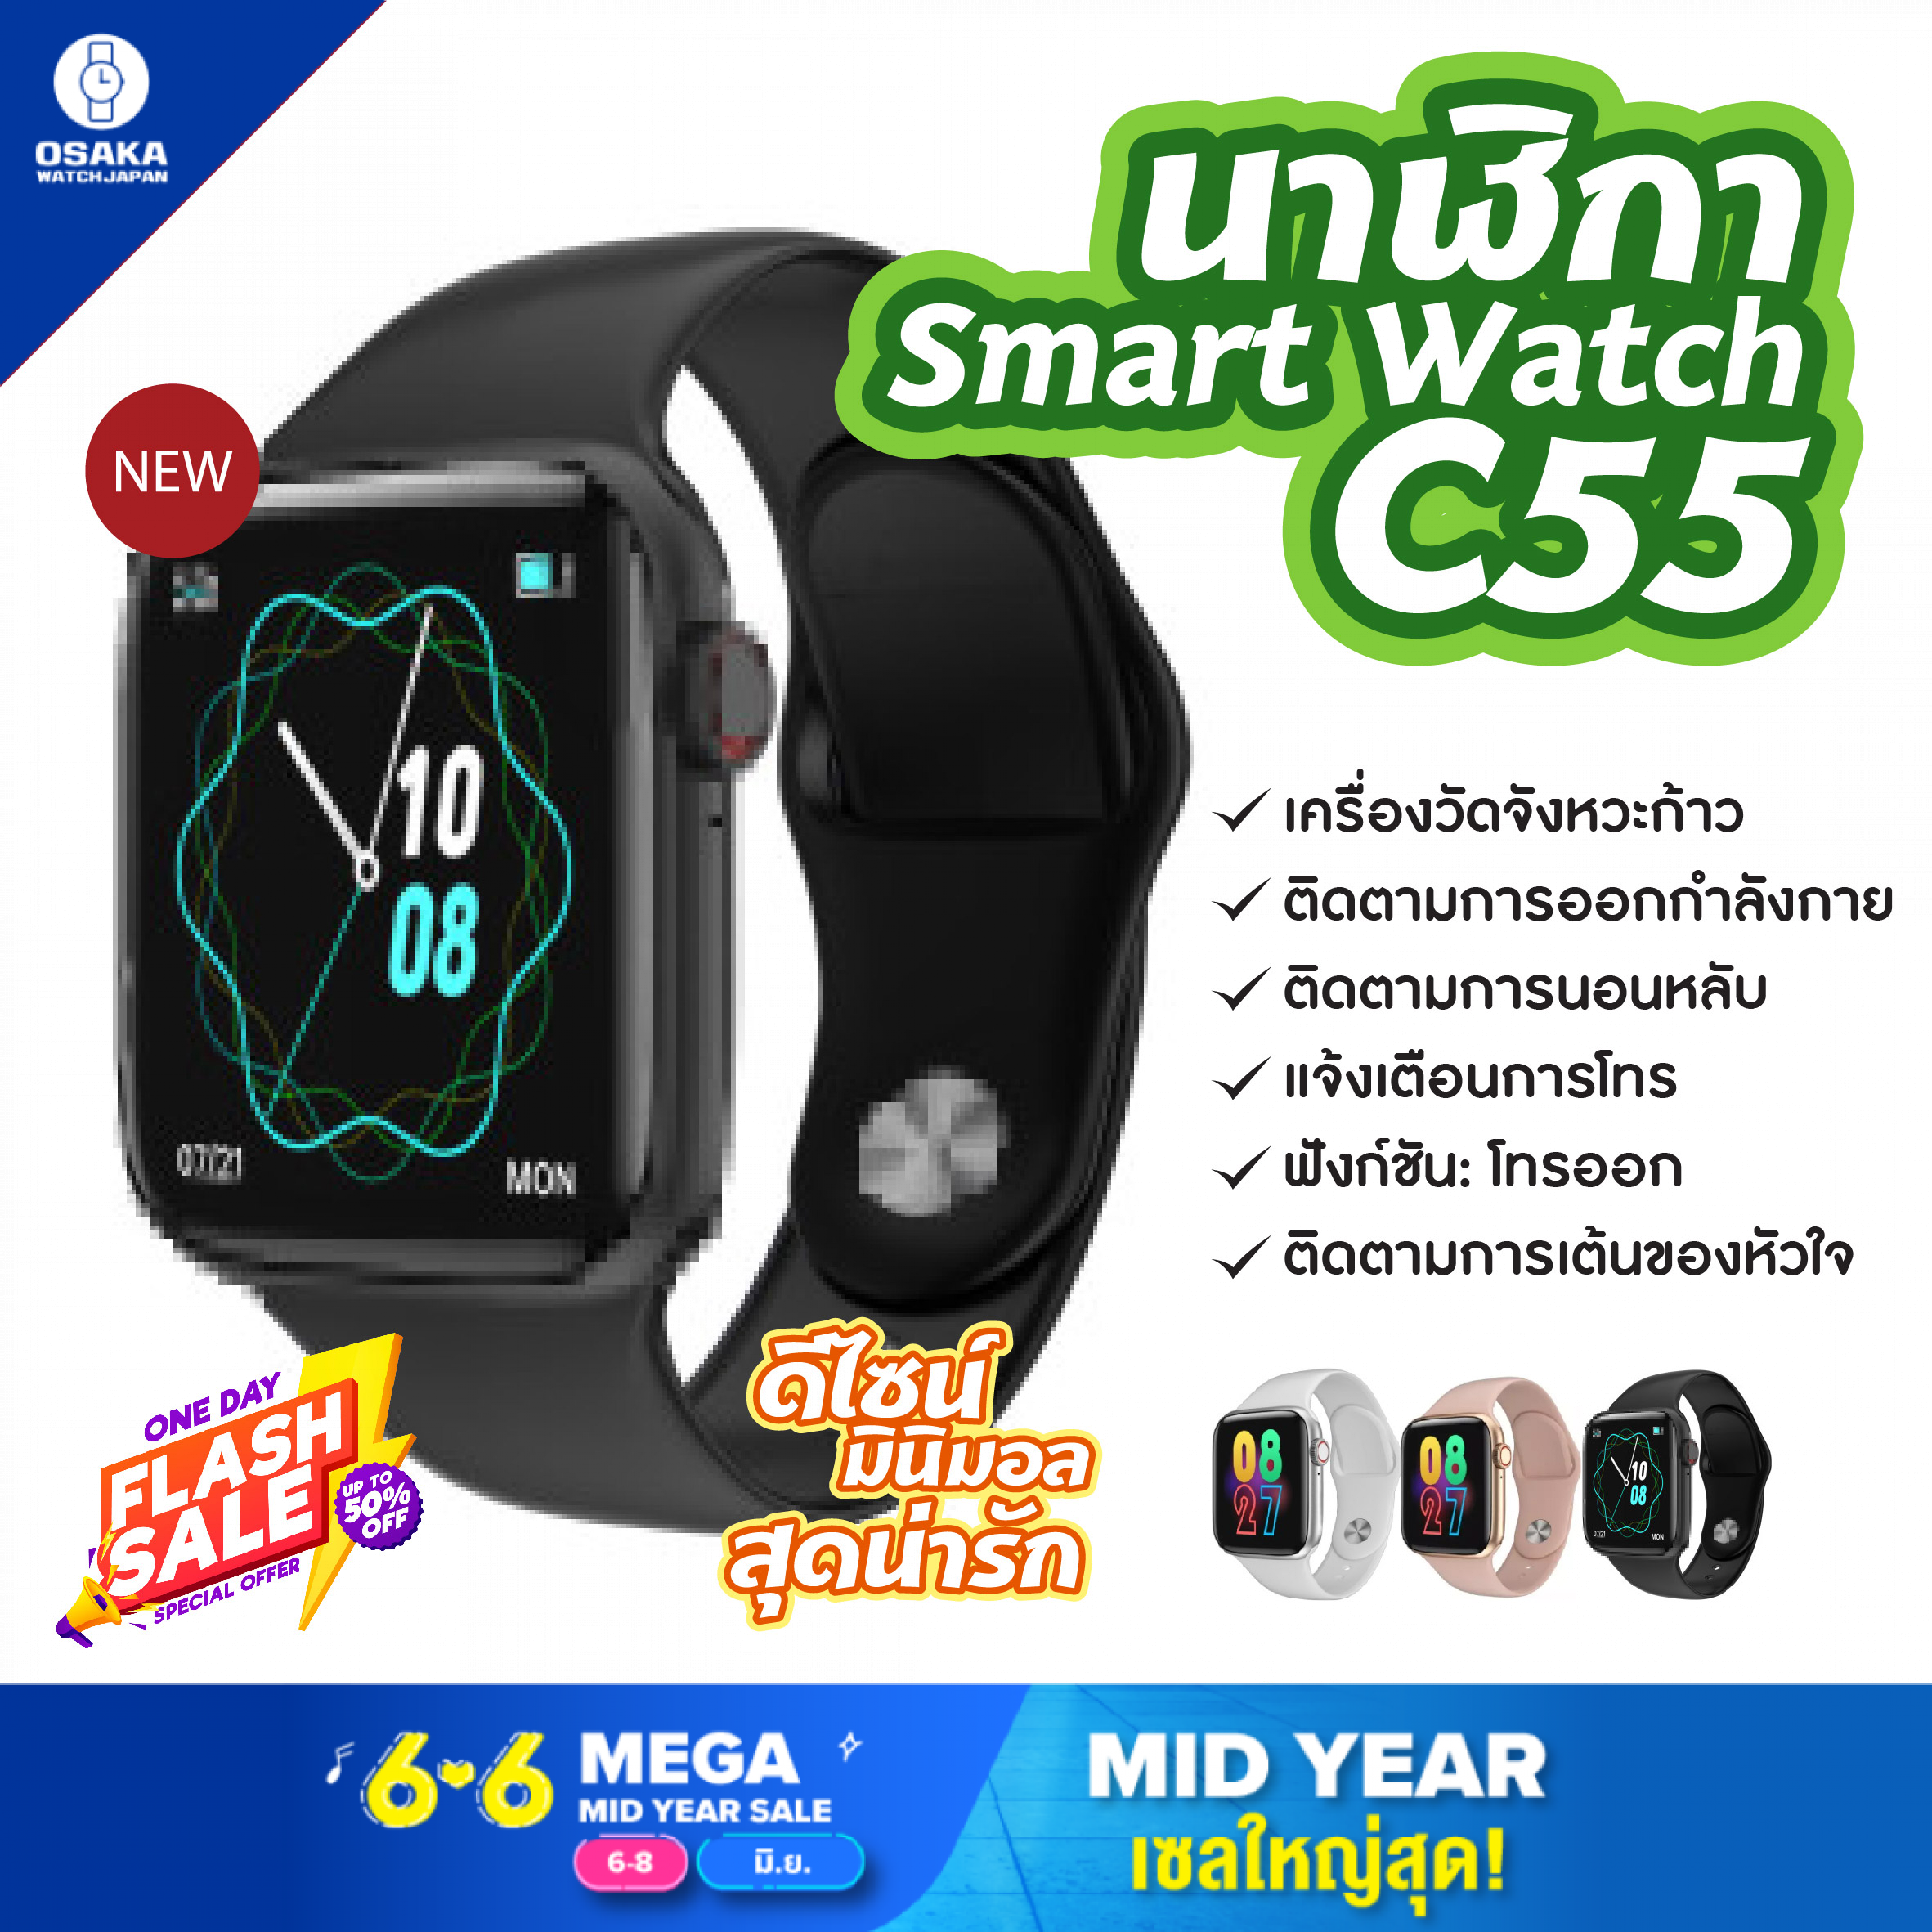 [ส่งไว] พร้อมส่งจากไทย Smart Watch C55 นาฬิกา นาฬิกาโทรศัพท์ โทรเข้า - โทรออก แจ้งเตือนข้อมความ ไลน์ เฟสบุ๊ค ฟังชั่นมากมาย จอทัสกรีน นาฬิกาอัจฉริยะ บลูทูธสมาร์ทวอทช์ นาฬิกา นาฬิกาข้อมือ